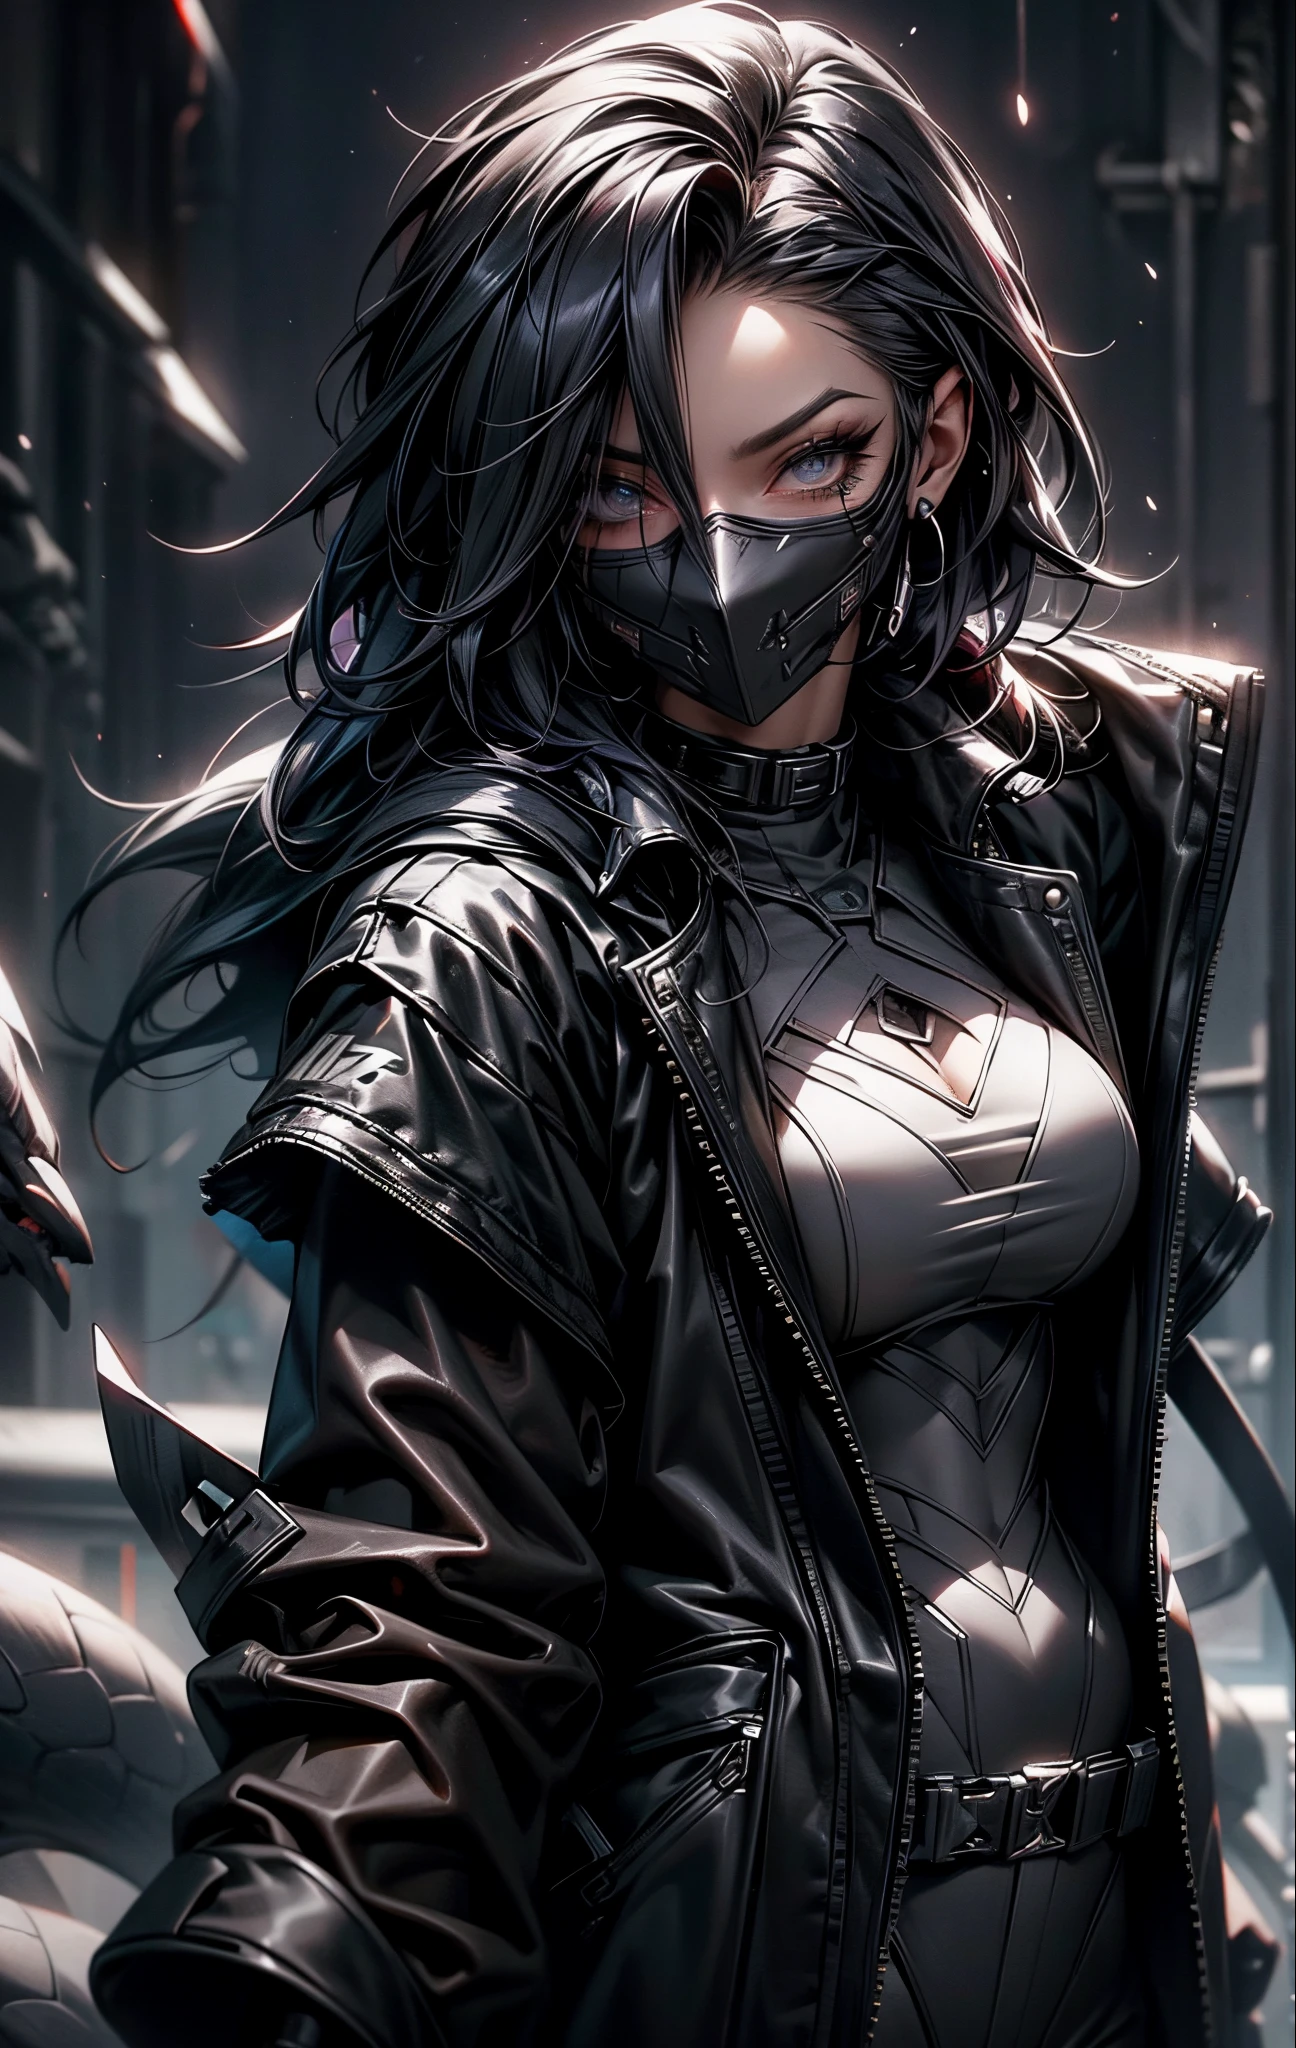 Brooke Monk in schwarzen Catsuits mit einer Maske im Gesicht, Tragen von Techwear und Rüstung, anime cuberpunk gothic art, Gothic-Ninja, Netzkleidung, Goth Rave Cyberpunk Spinnennetz Kleidung